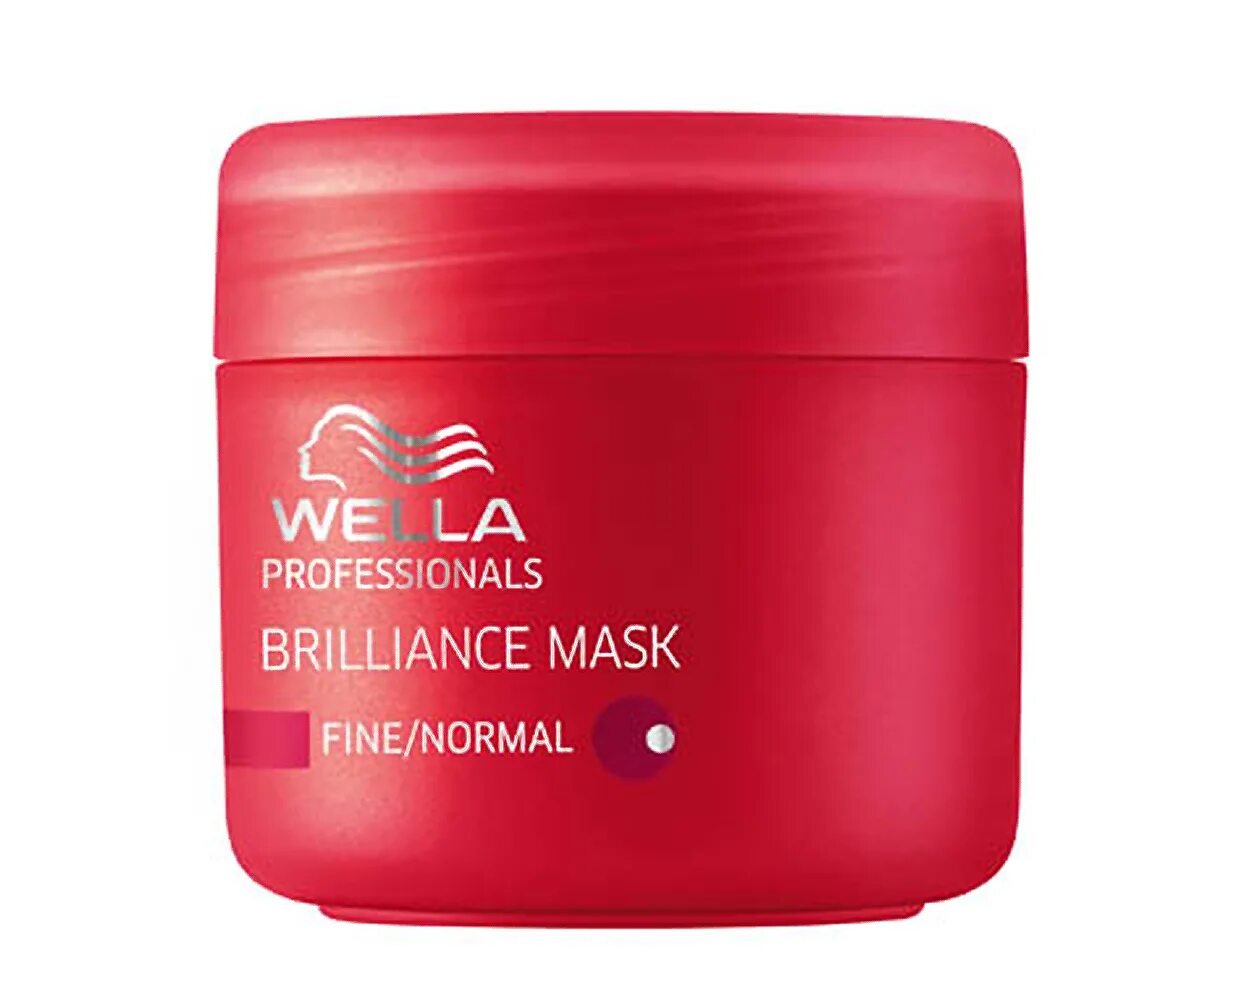 Wella Brilliance маска 150 ml. Велла брилианс для окрашенных волос маска. Wella Invigo Brilliance Fine Mask. Wella маска красная.